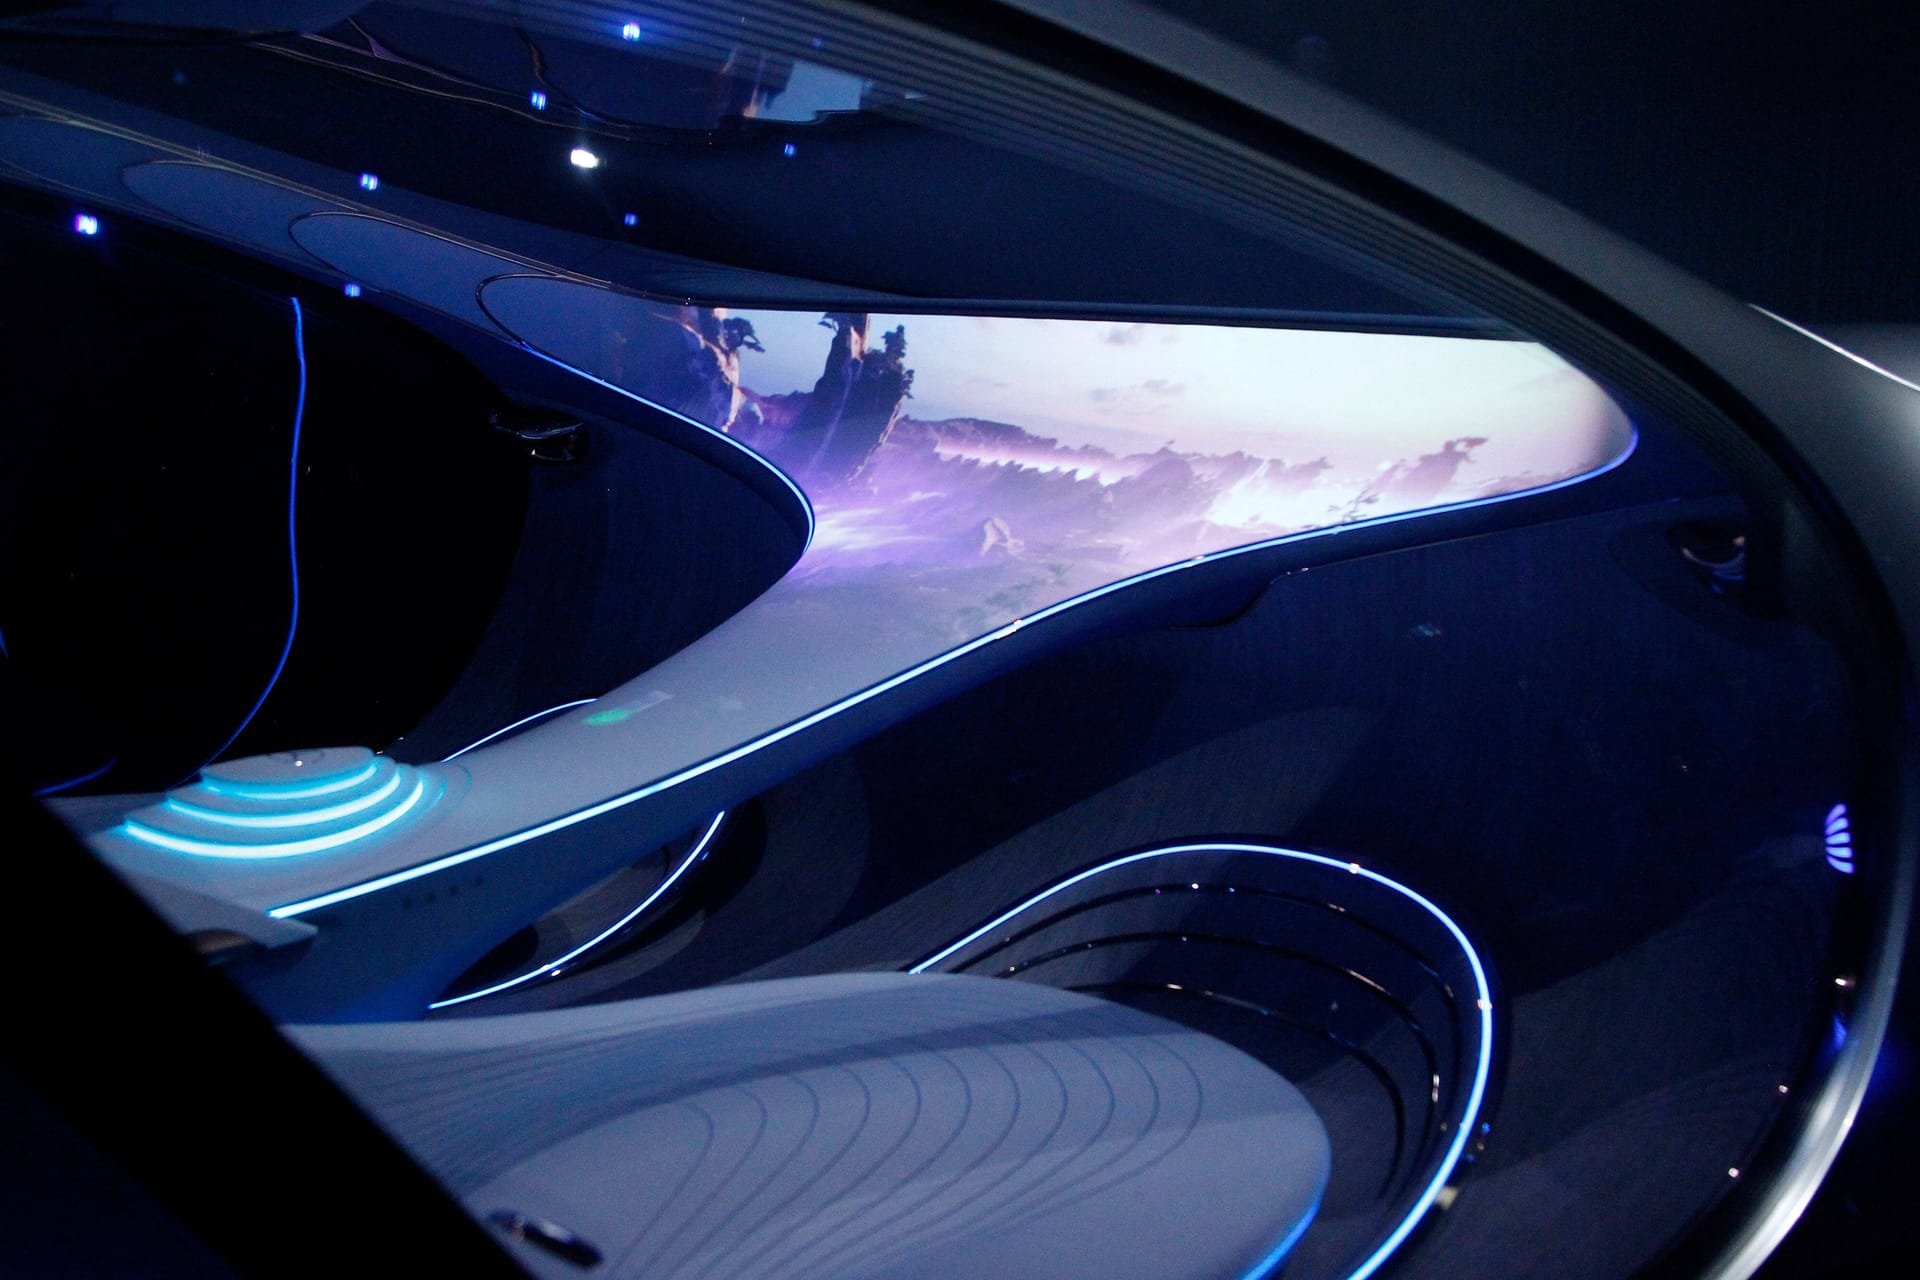 Mercedes Vision AVTR: Während der Autopilot fährt, wird die riesige weiße Konsole zur Kinoleinwand.